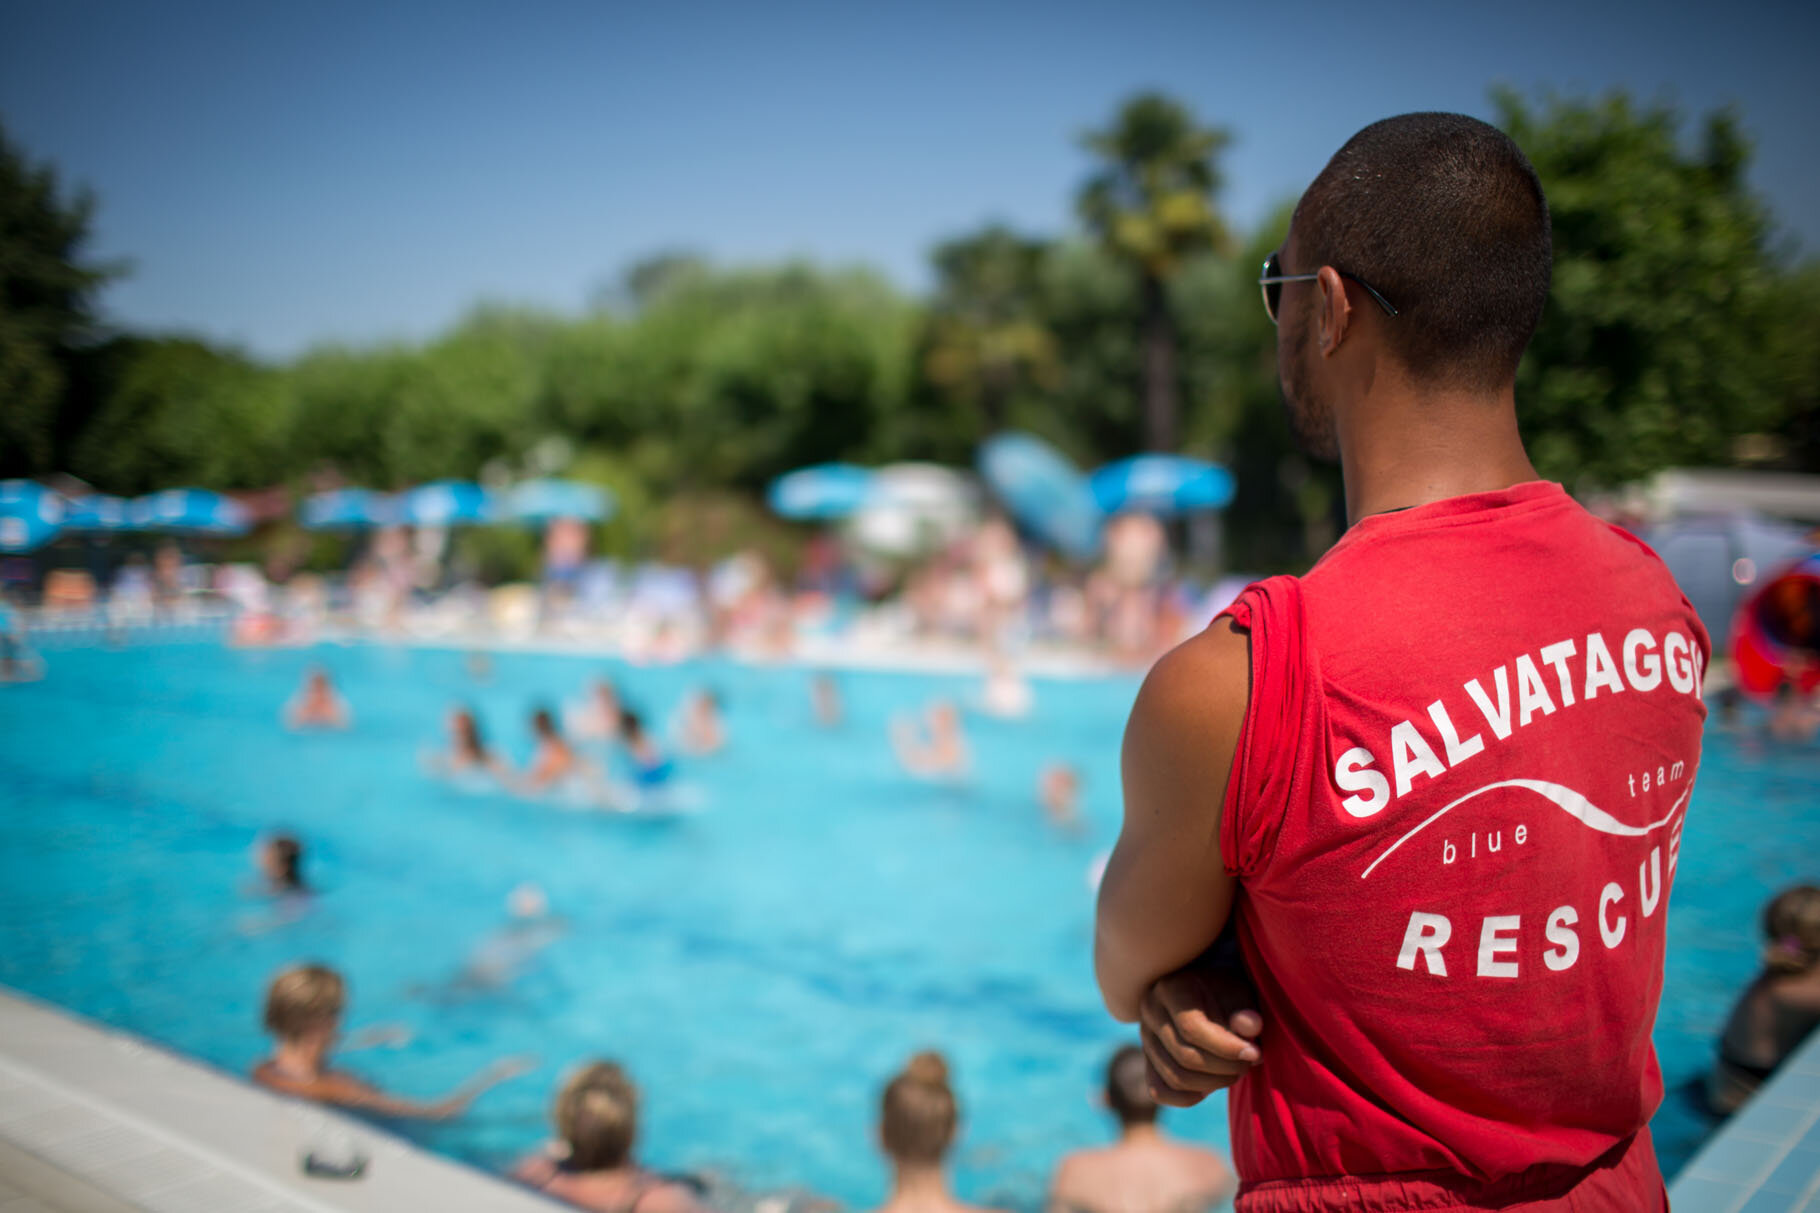 Swimmingpool-lifeguard-security